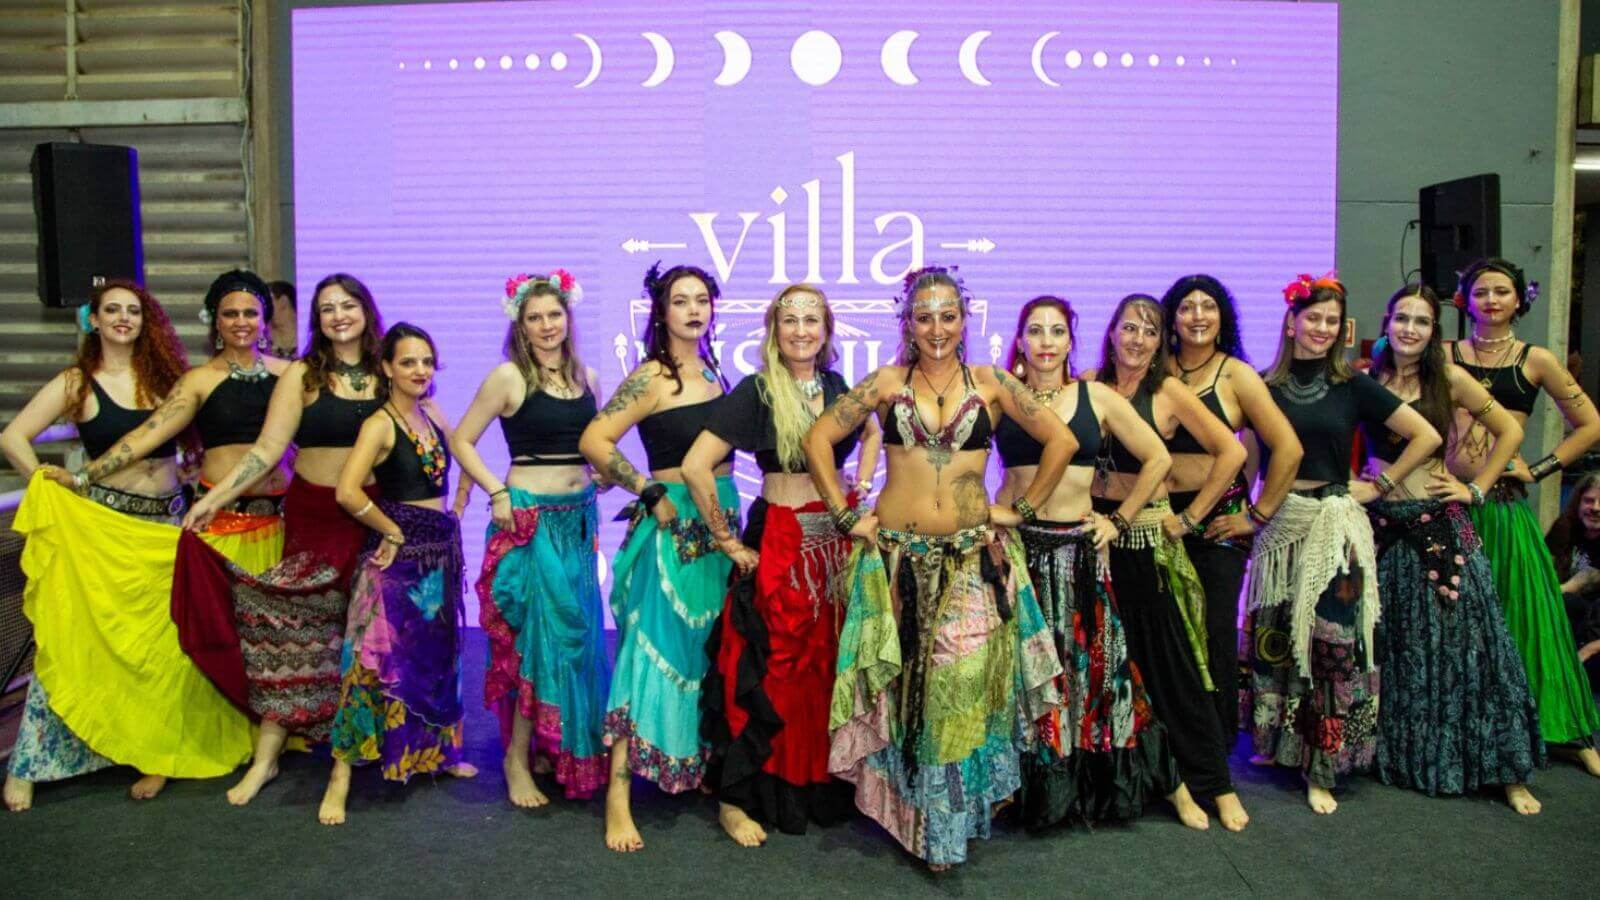 Dançarinas em frente a painel do evento Villa Mistika em Jundiaí